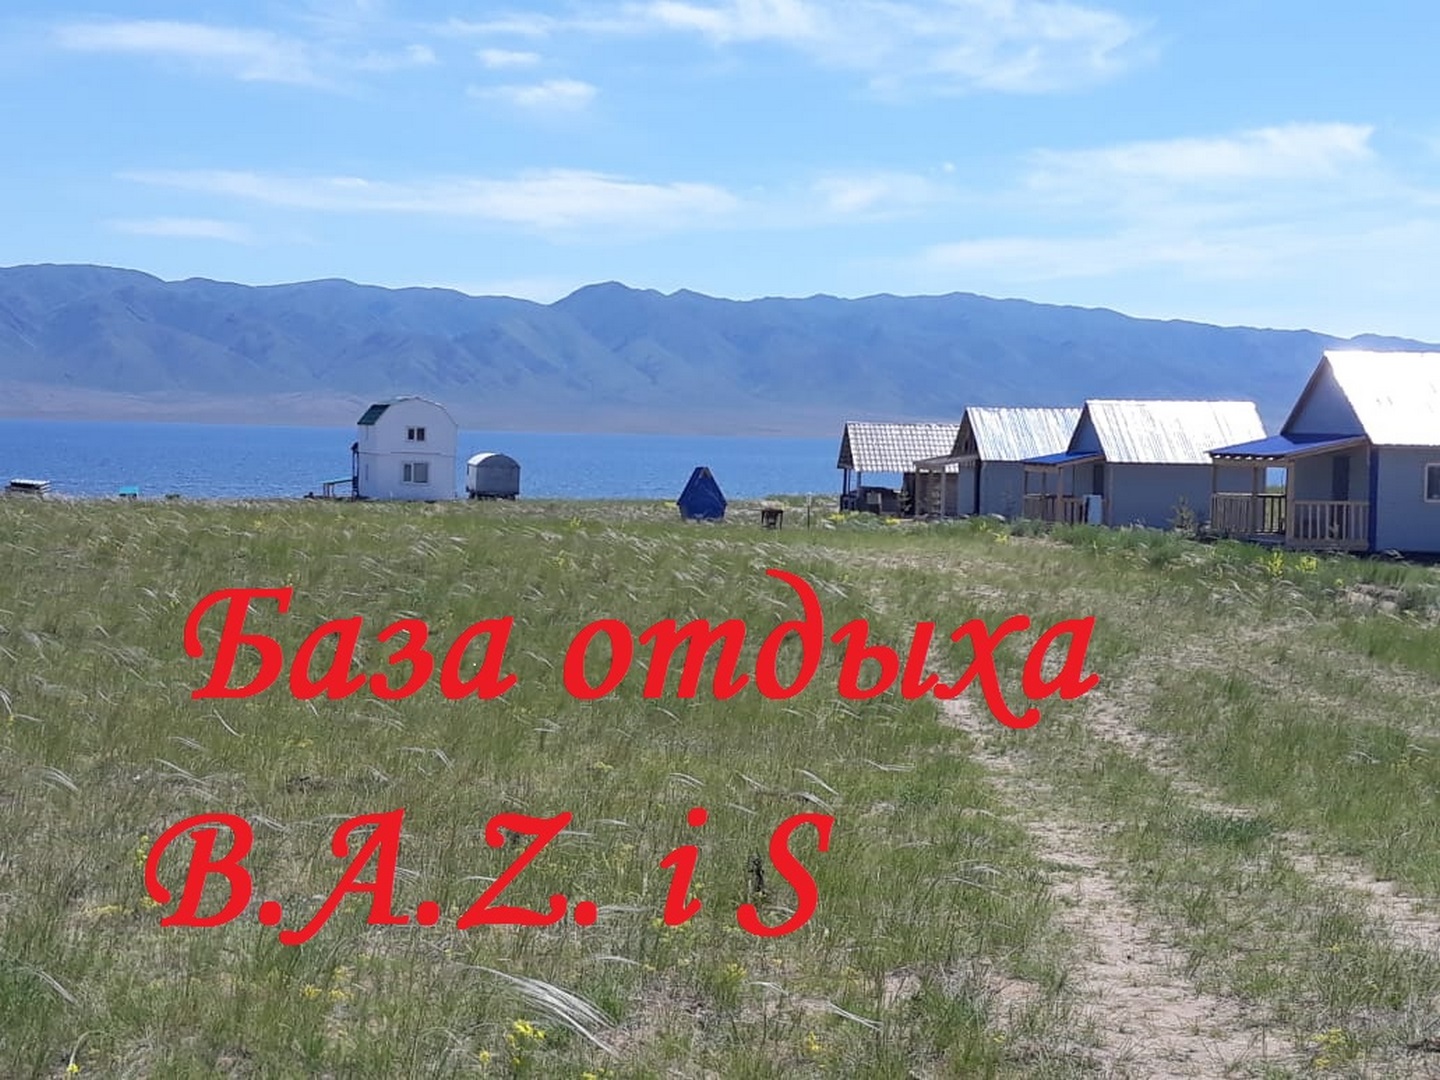 База отдыха «B.A.Z.и S.» - Limpopo Travel в России